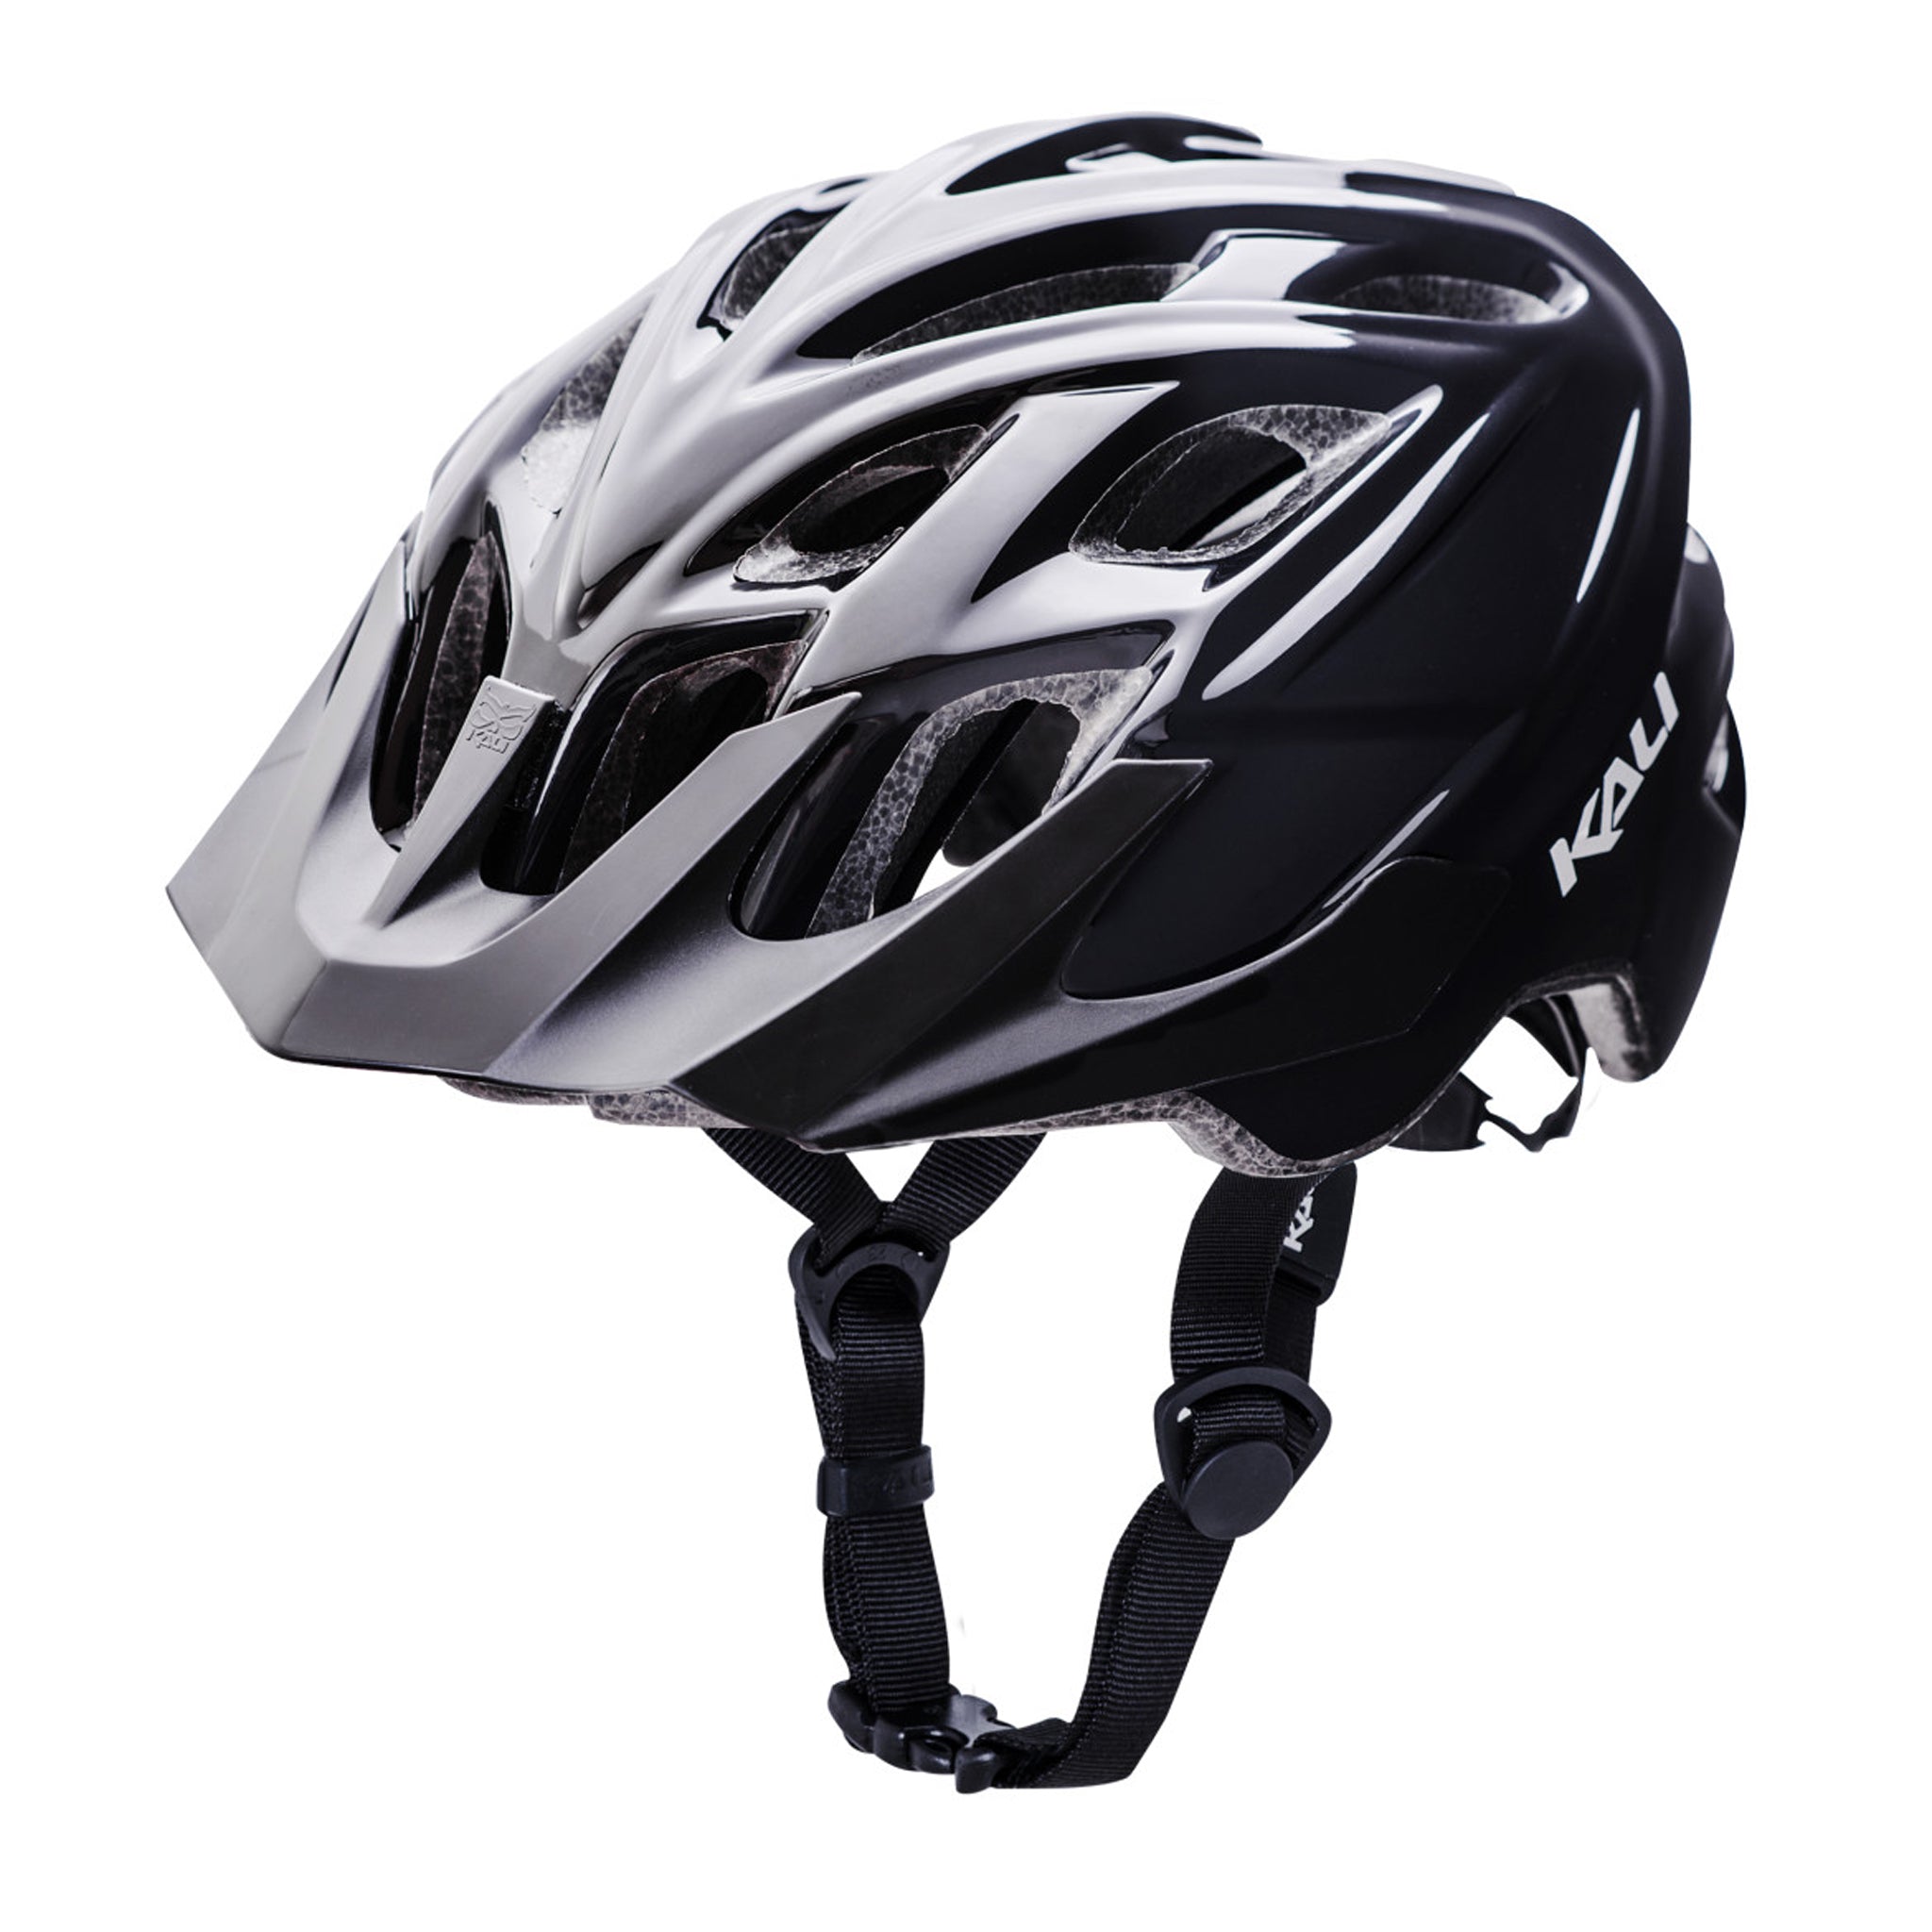 Kali Chakra Solo Trail Helmet Small/Medium Black